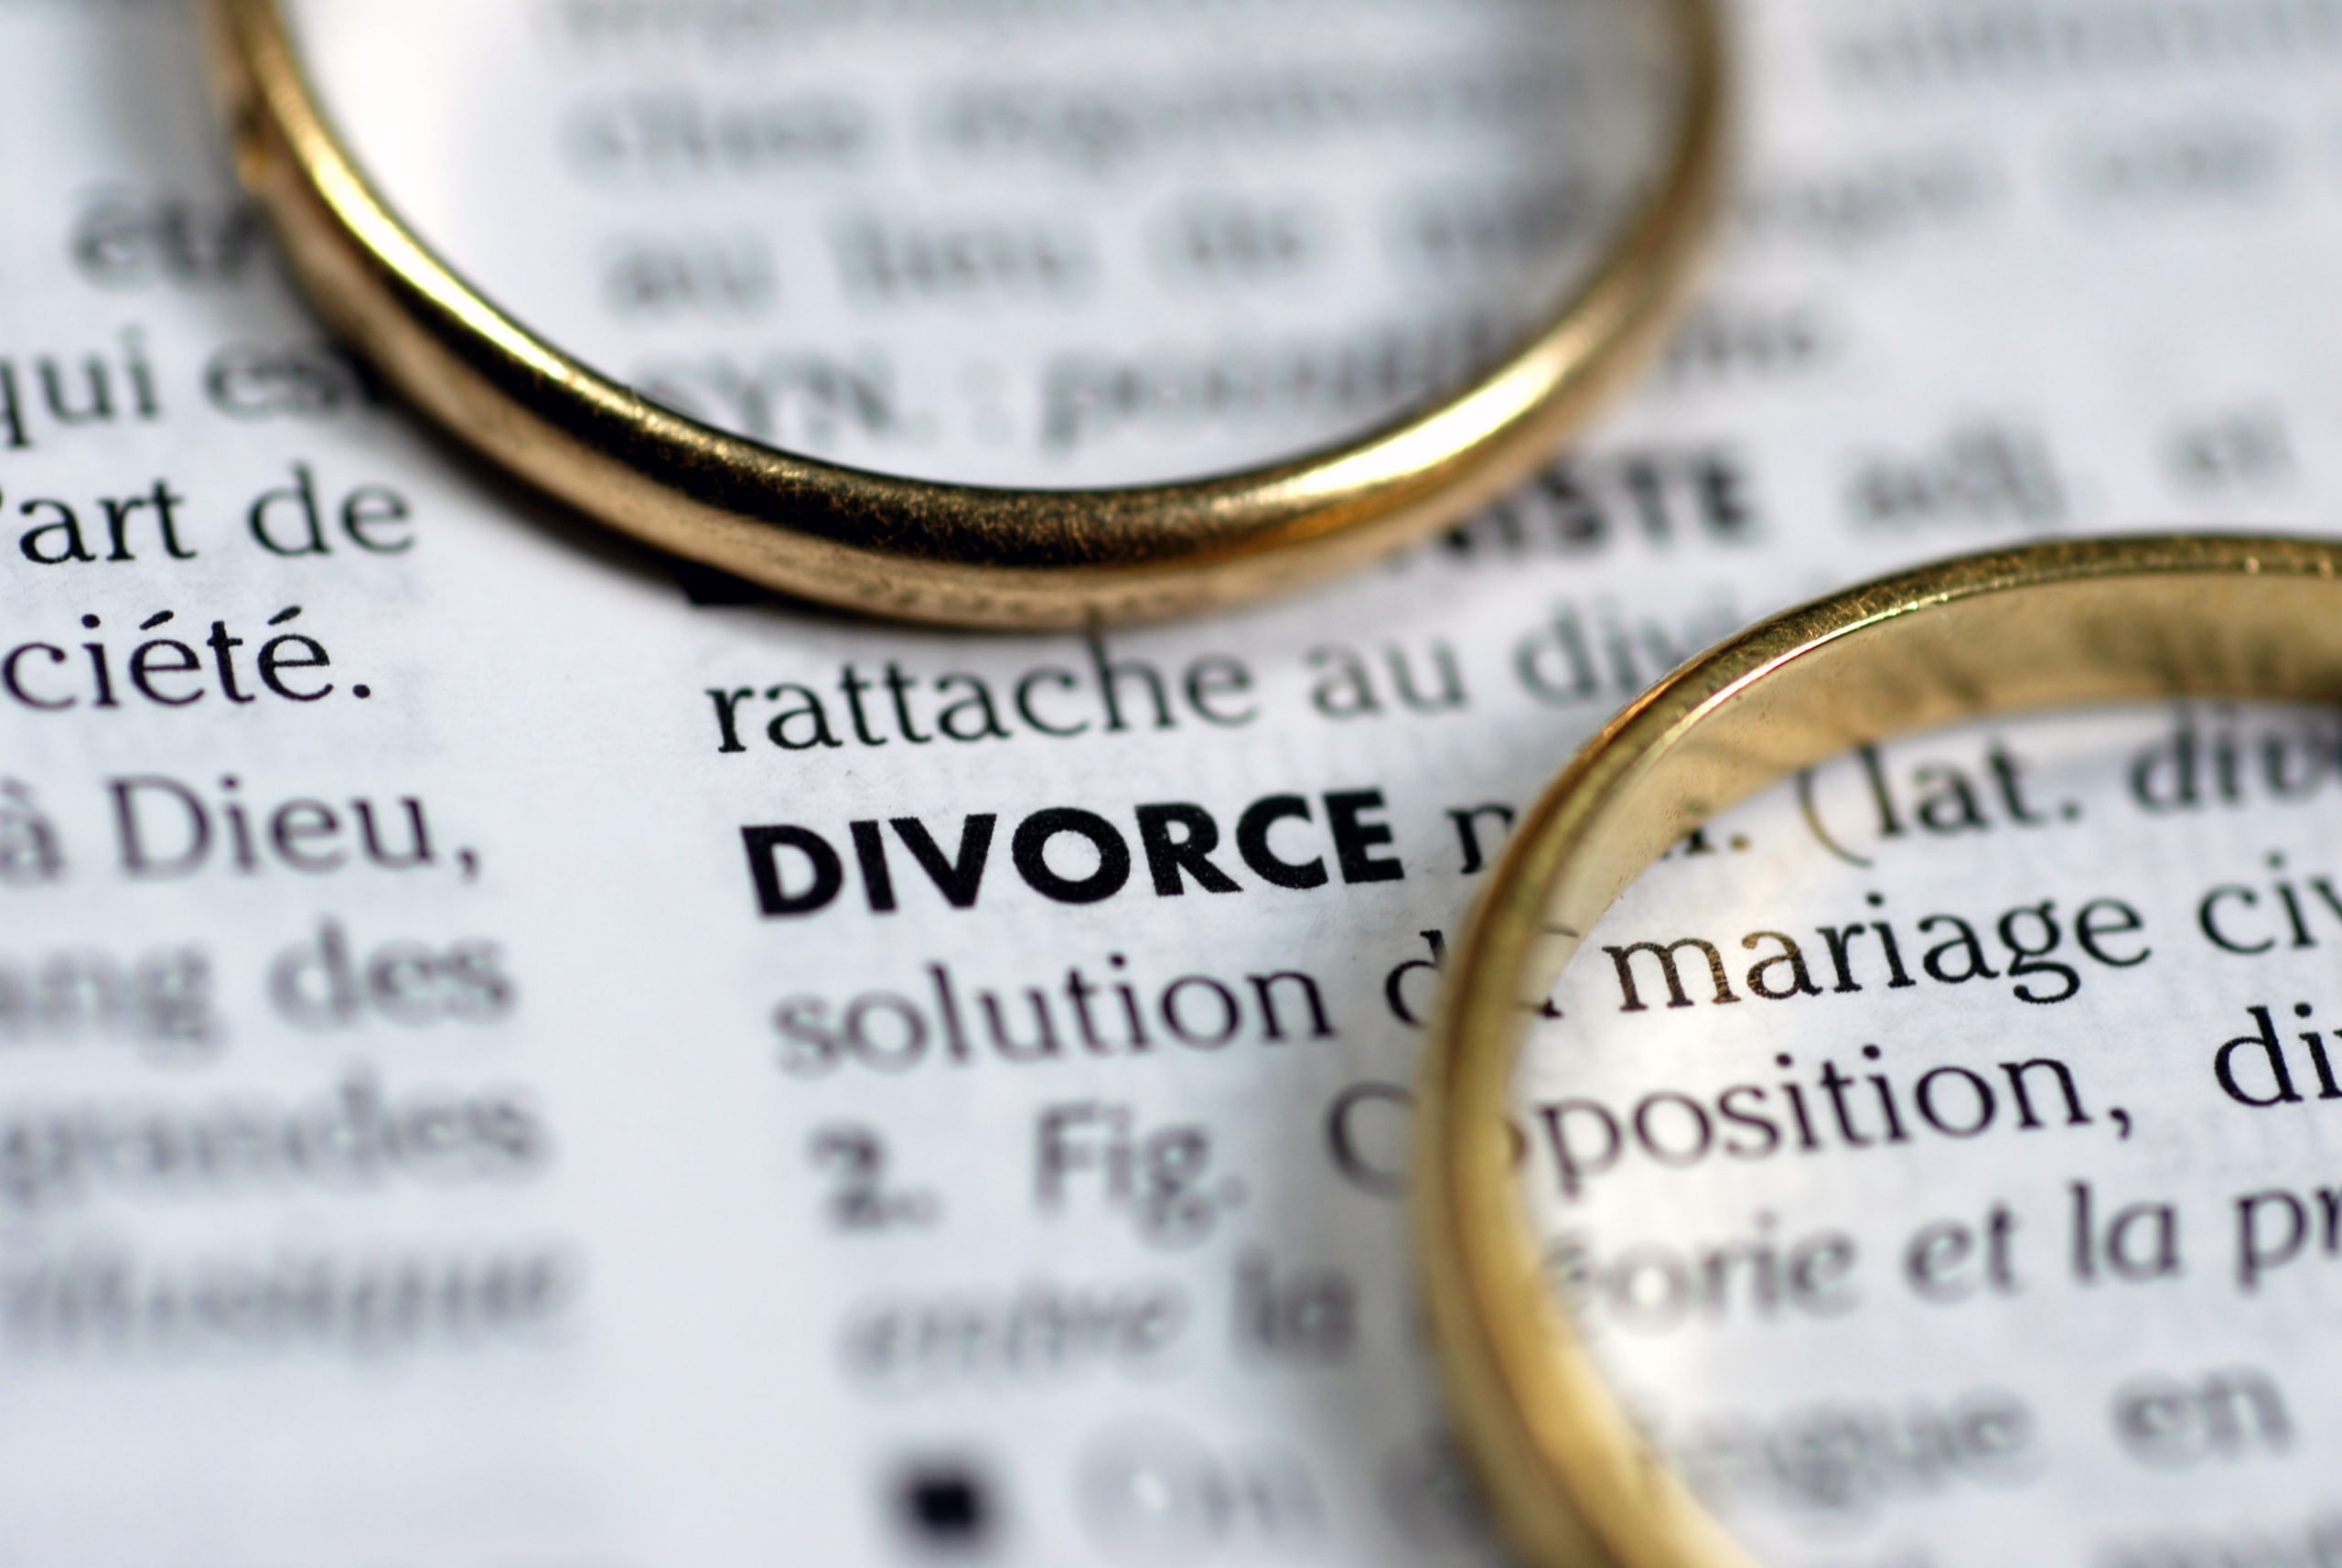 Le risque d’annulation des divorces par consentement mutuel en un clic ...